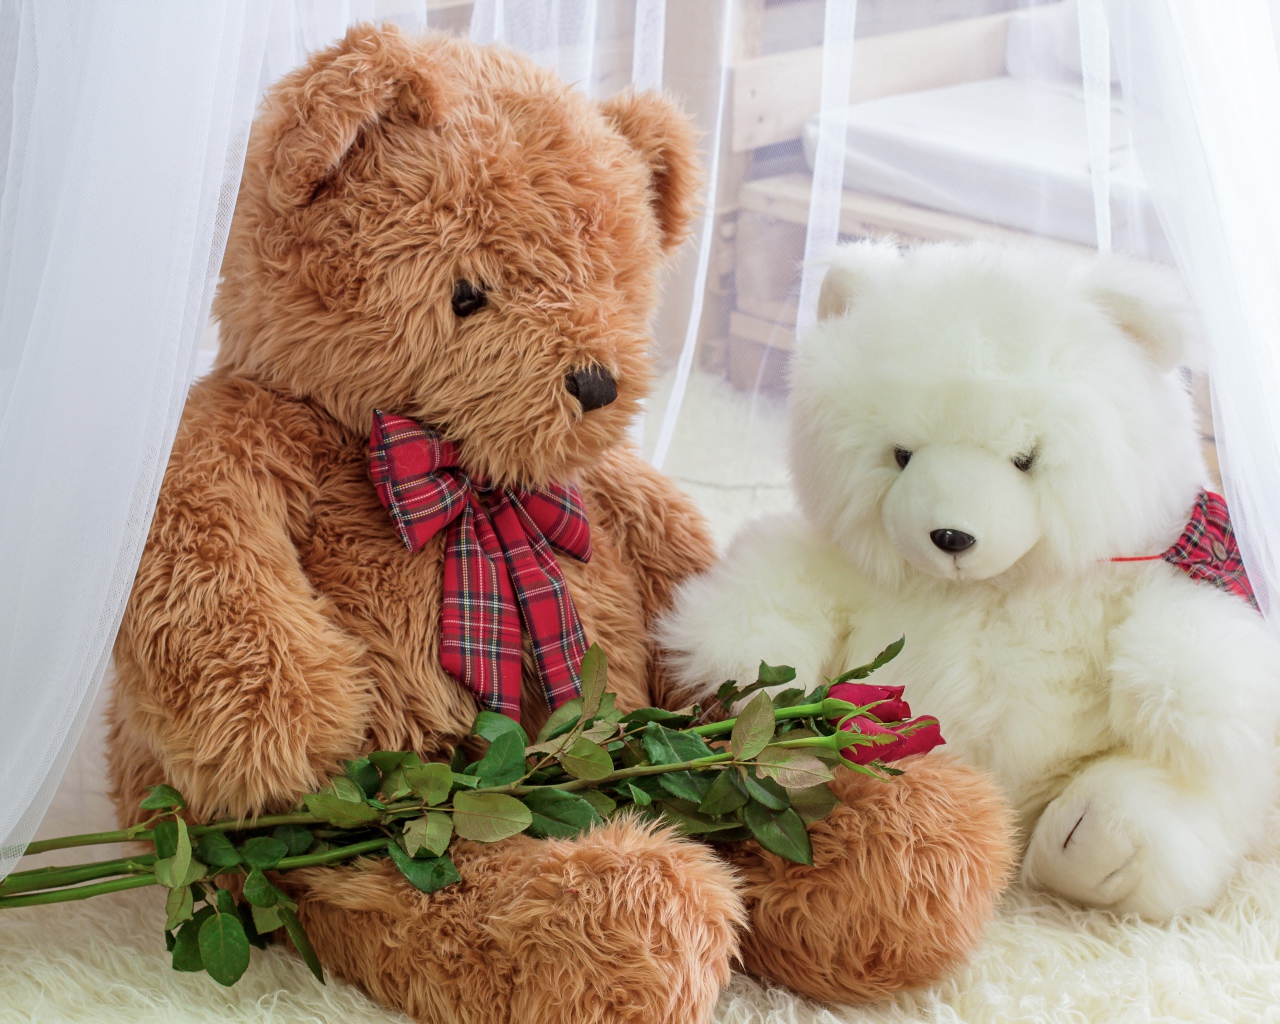 Два игрушечных медведя с розами 